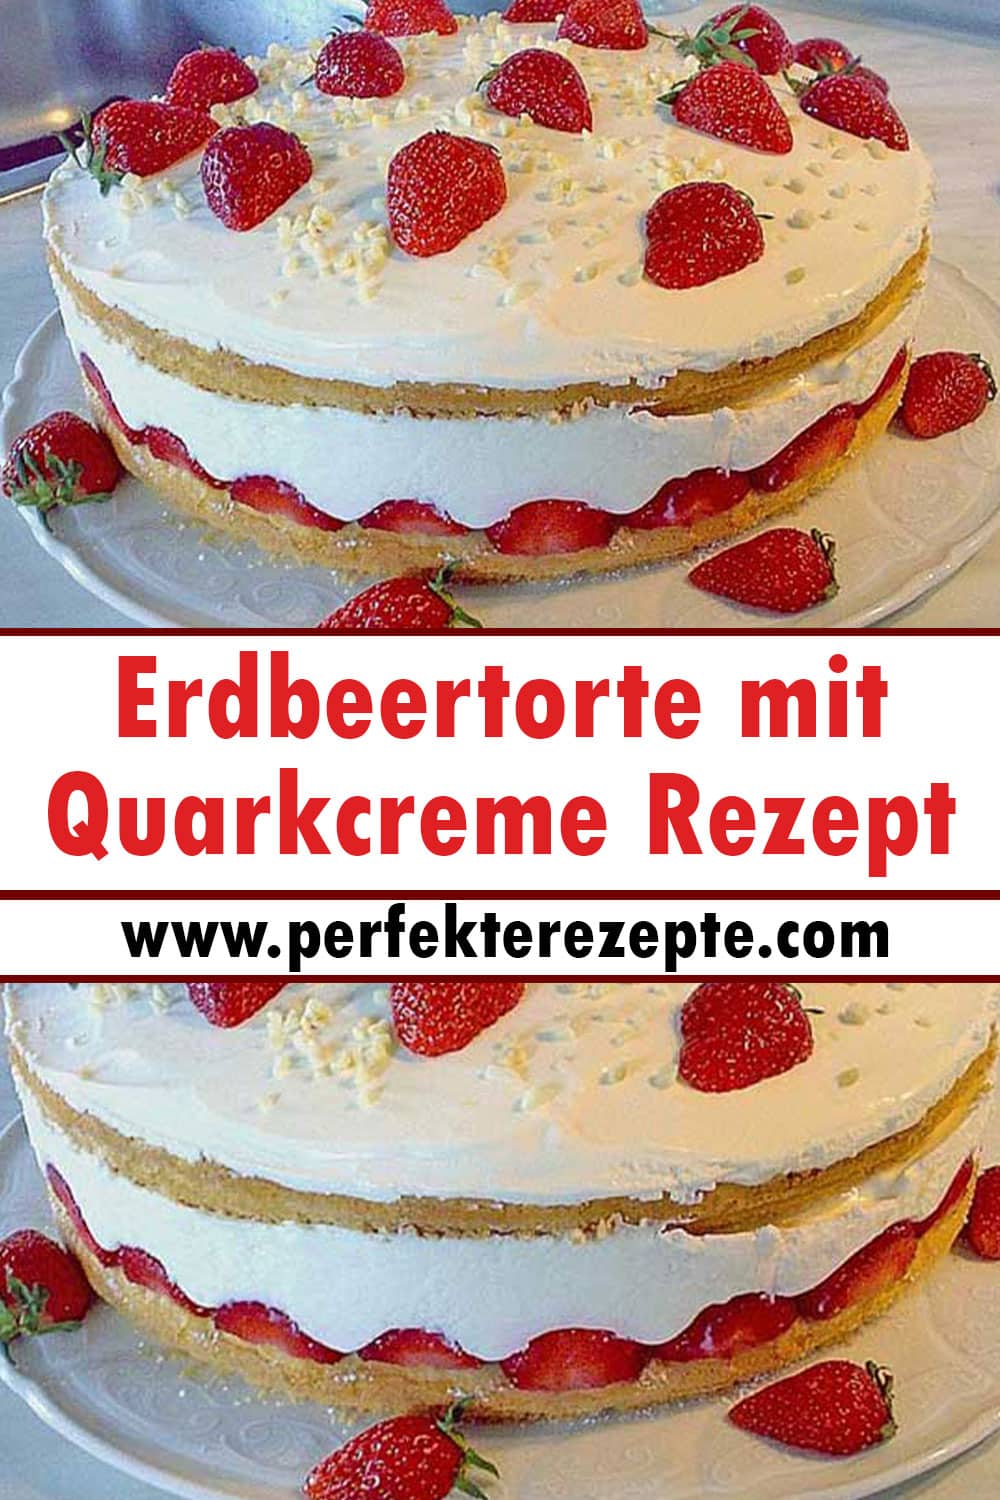 Erdbeertorte mit Quarkcreme Rezept